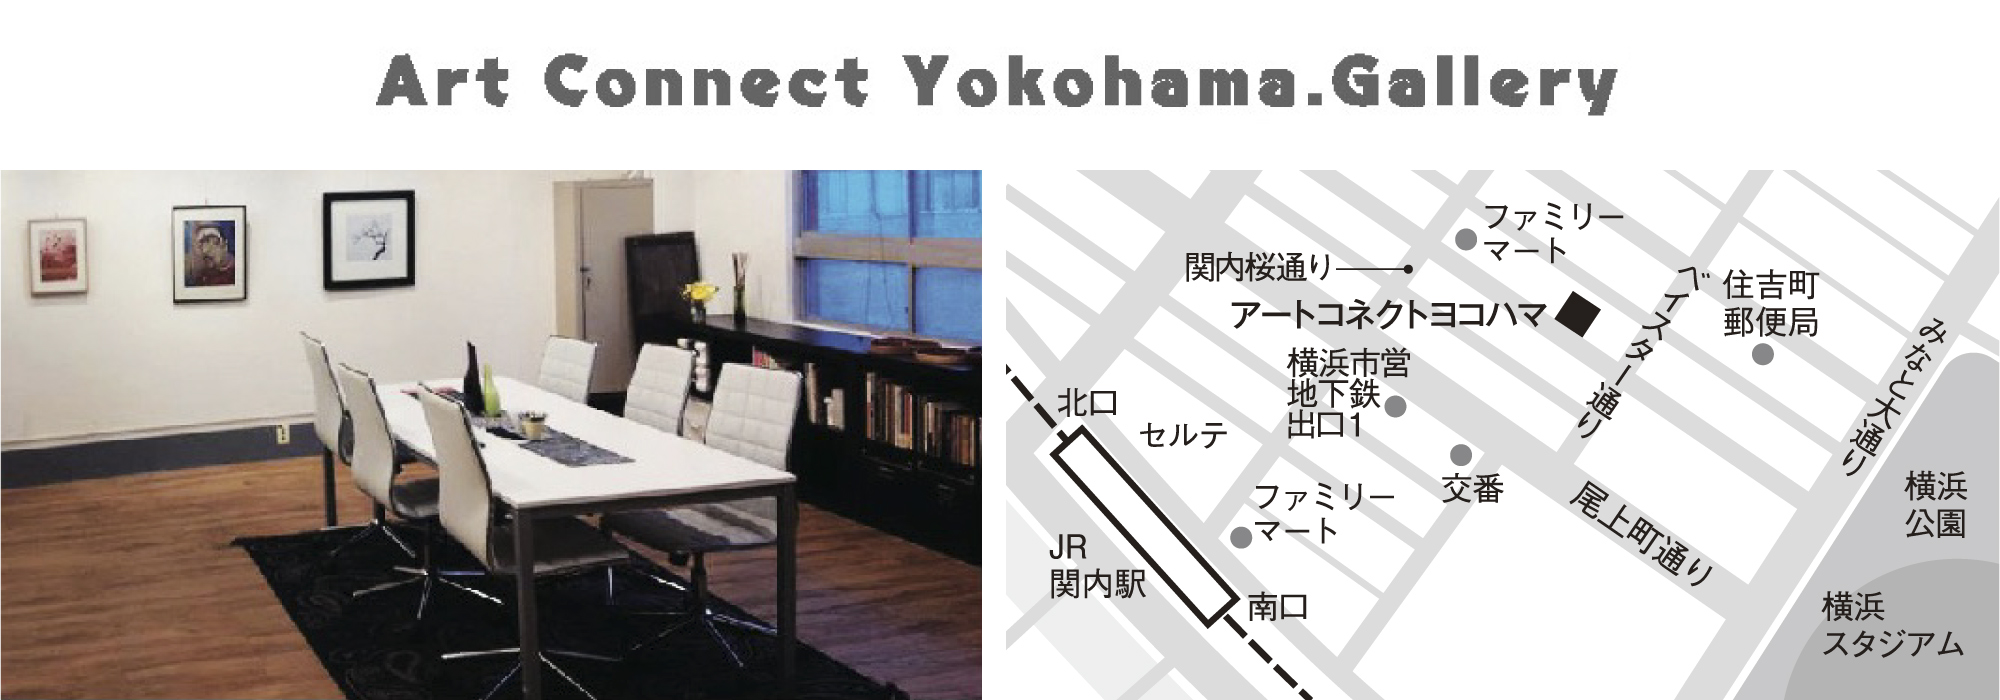 Art Connect Yokohama